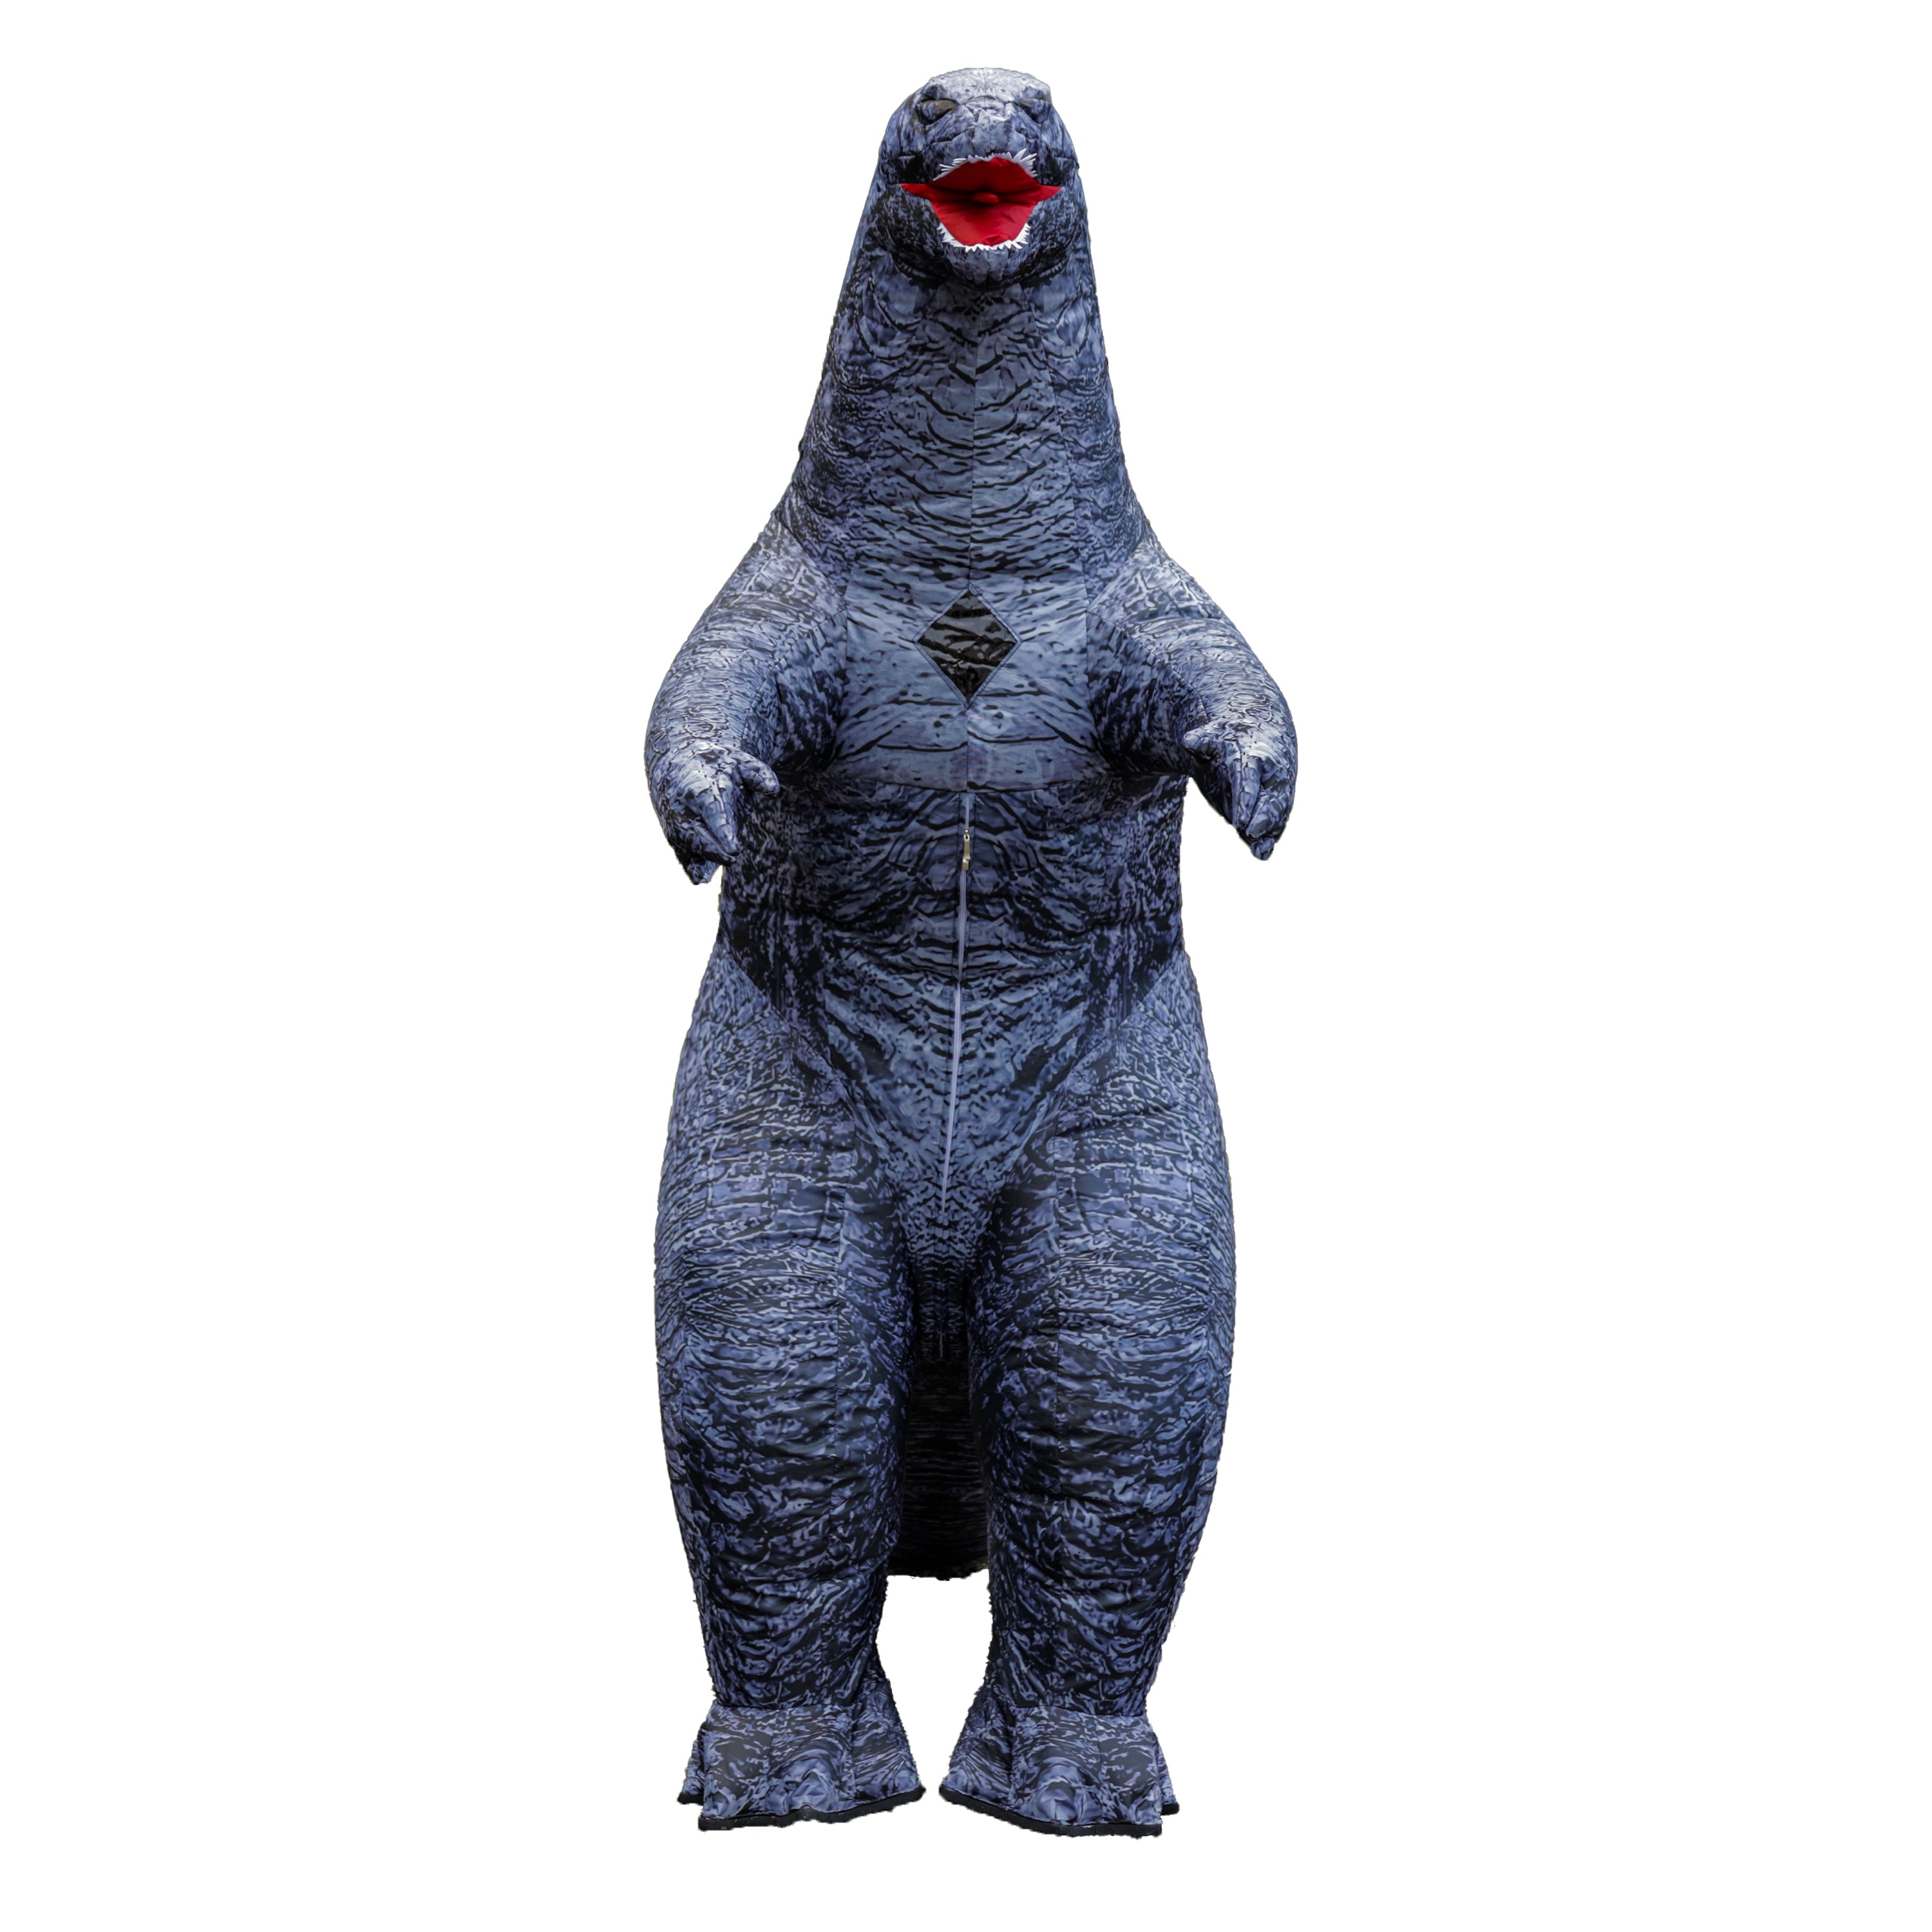 Giant Inflatable Godzilla Chubsuit - Premium Chub Suit